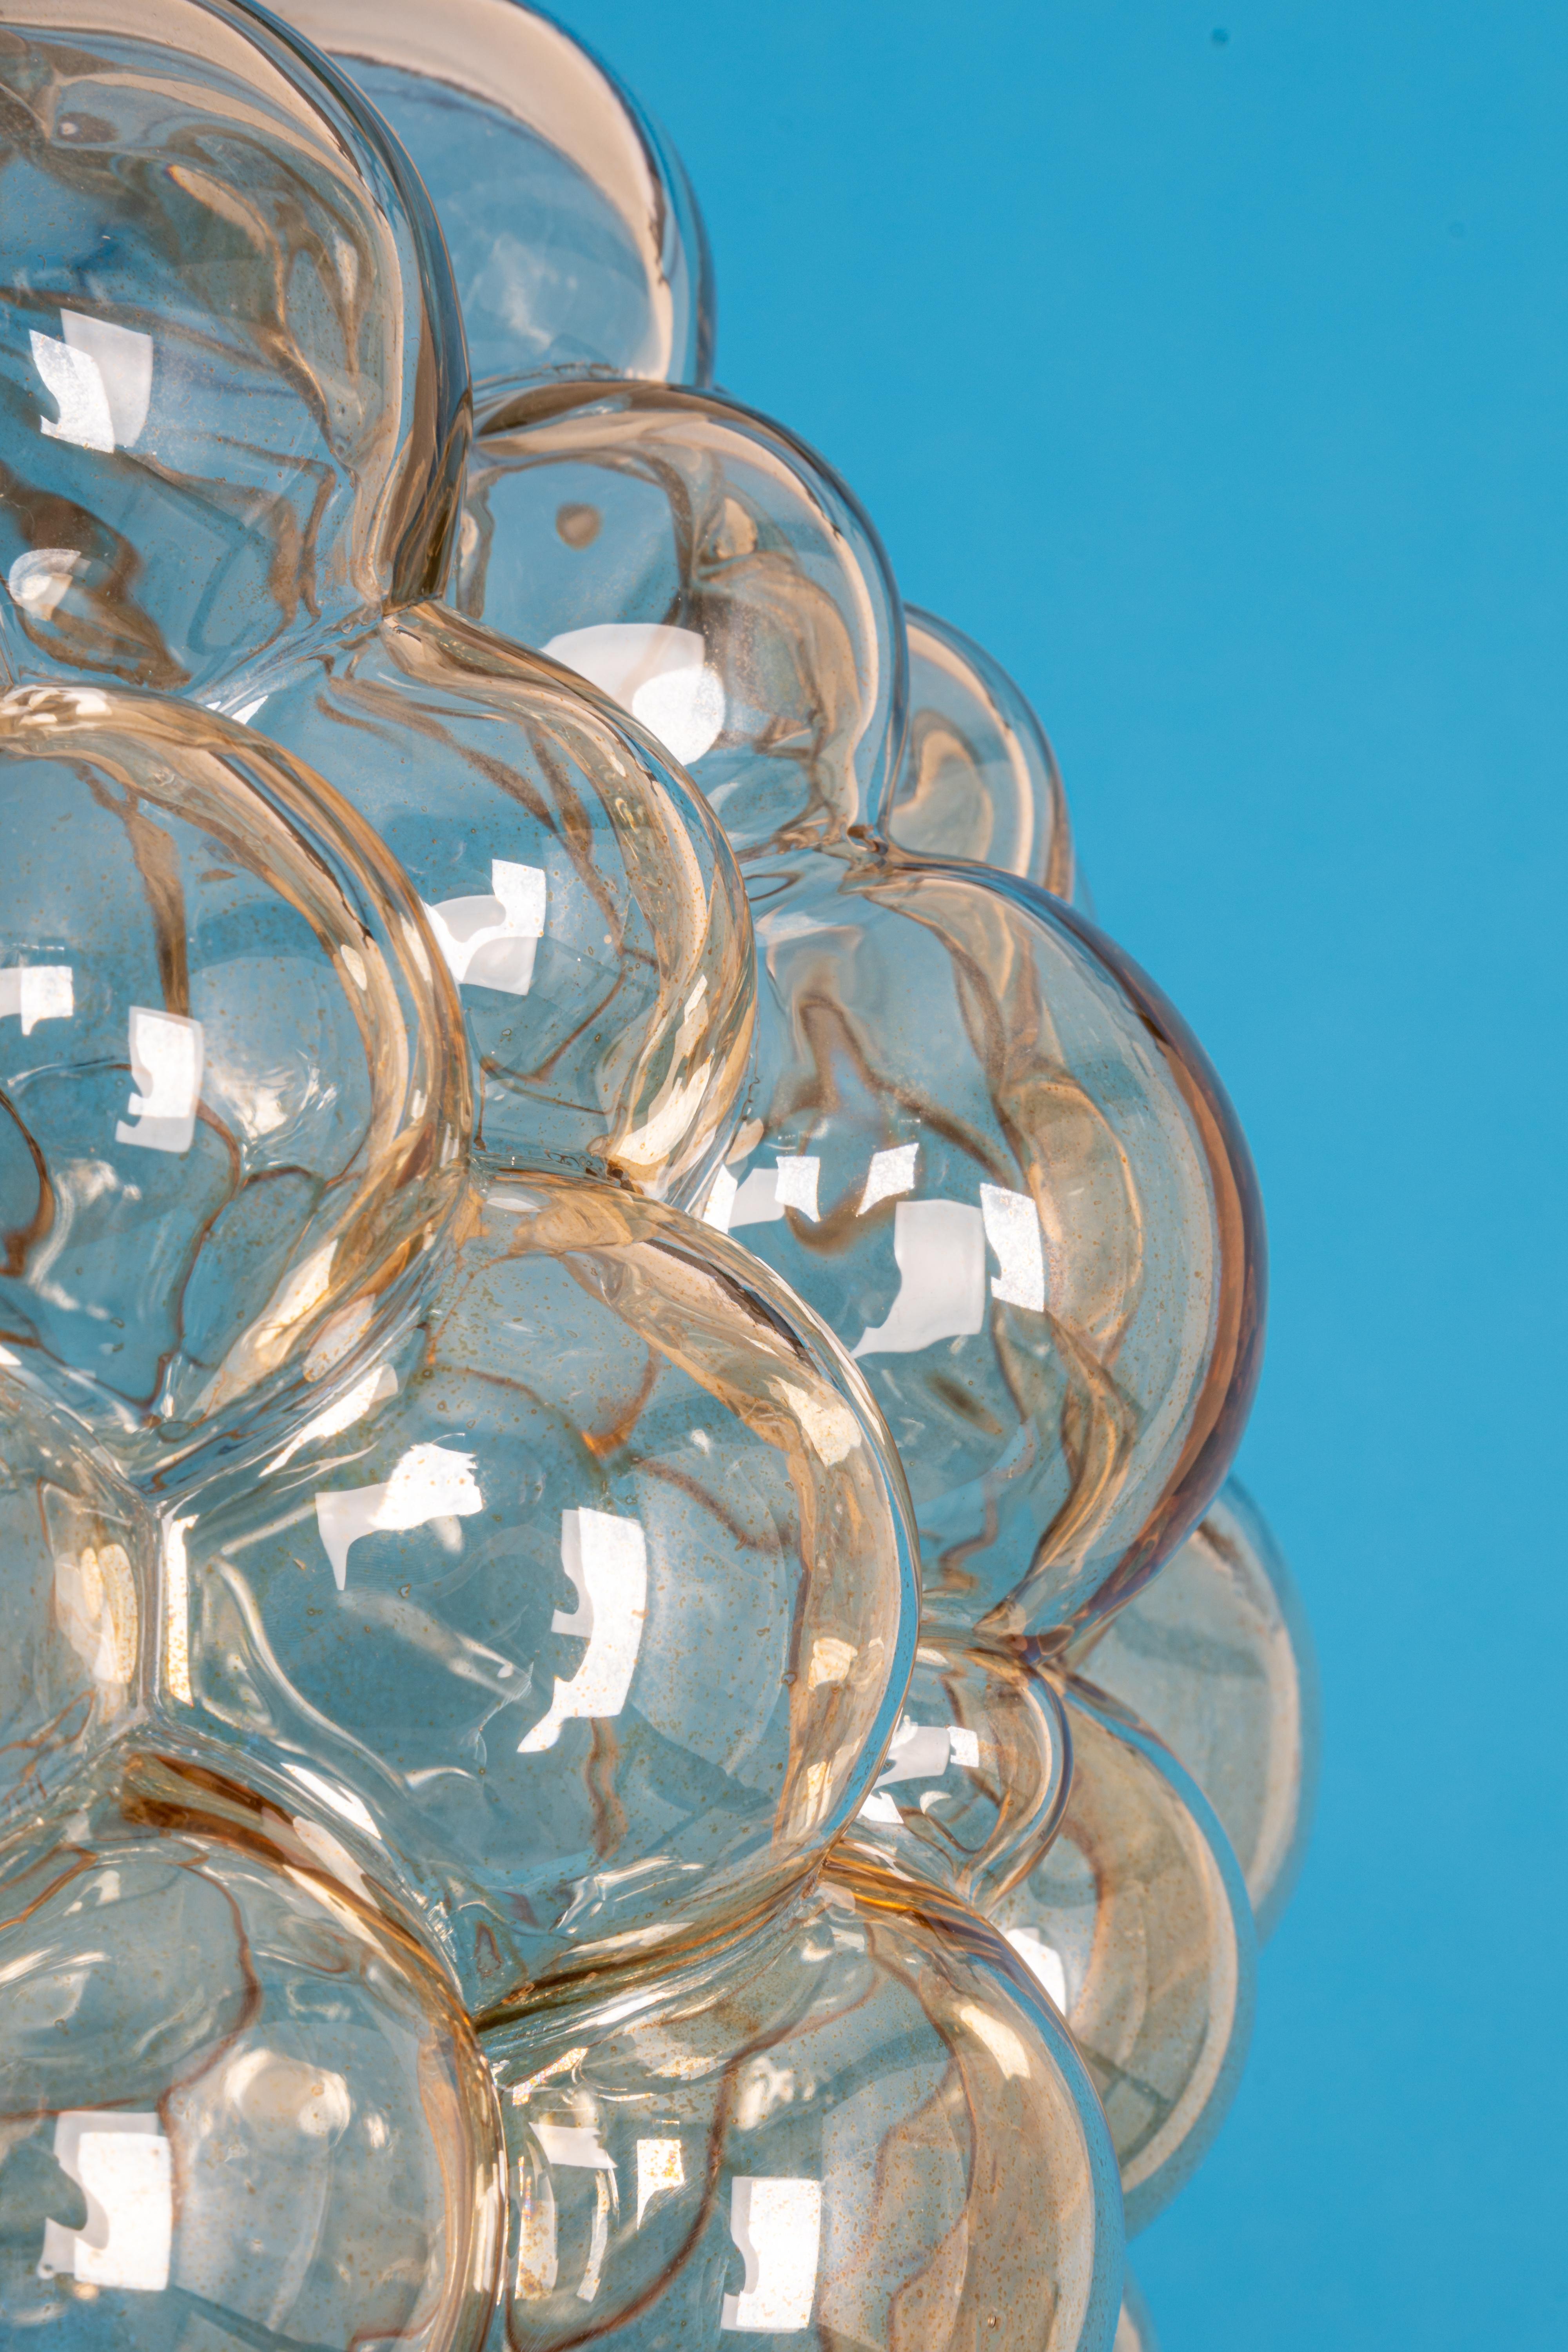 Un grand pendentif rond en verre à bulles de couleur fumée légère conçu par Helena Tynell pour Limburg, fabriqué en Allemagne, vers les années 1970

Douilles : Il faut 1 ampoule standard E27.
Les ampoules ne sont pas incluses. Il est possible